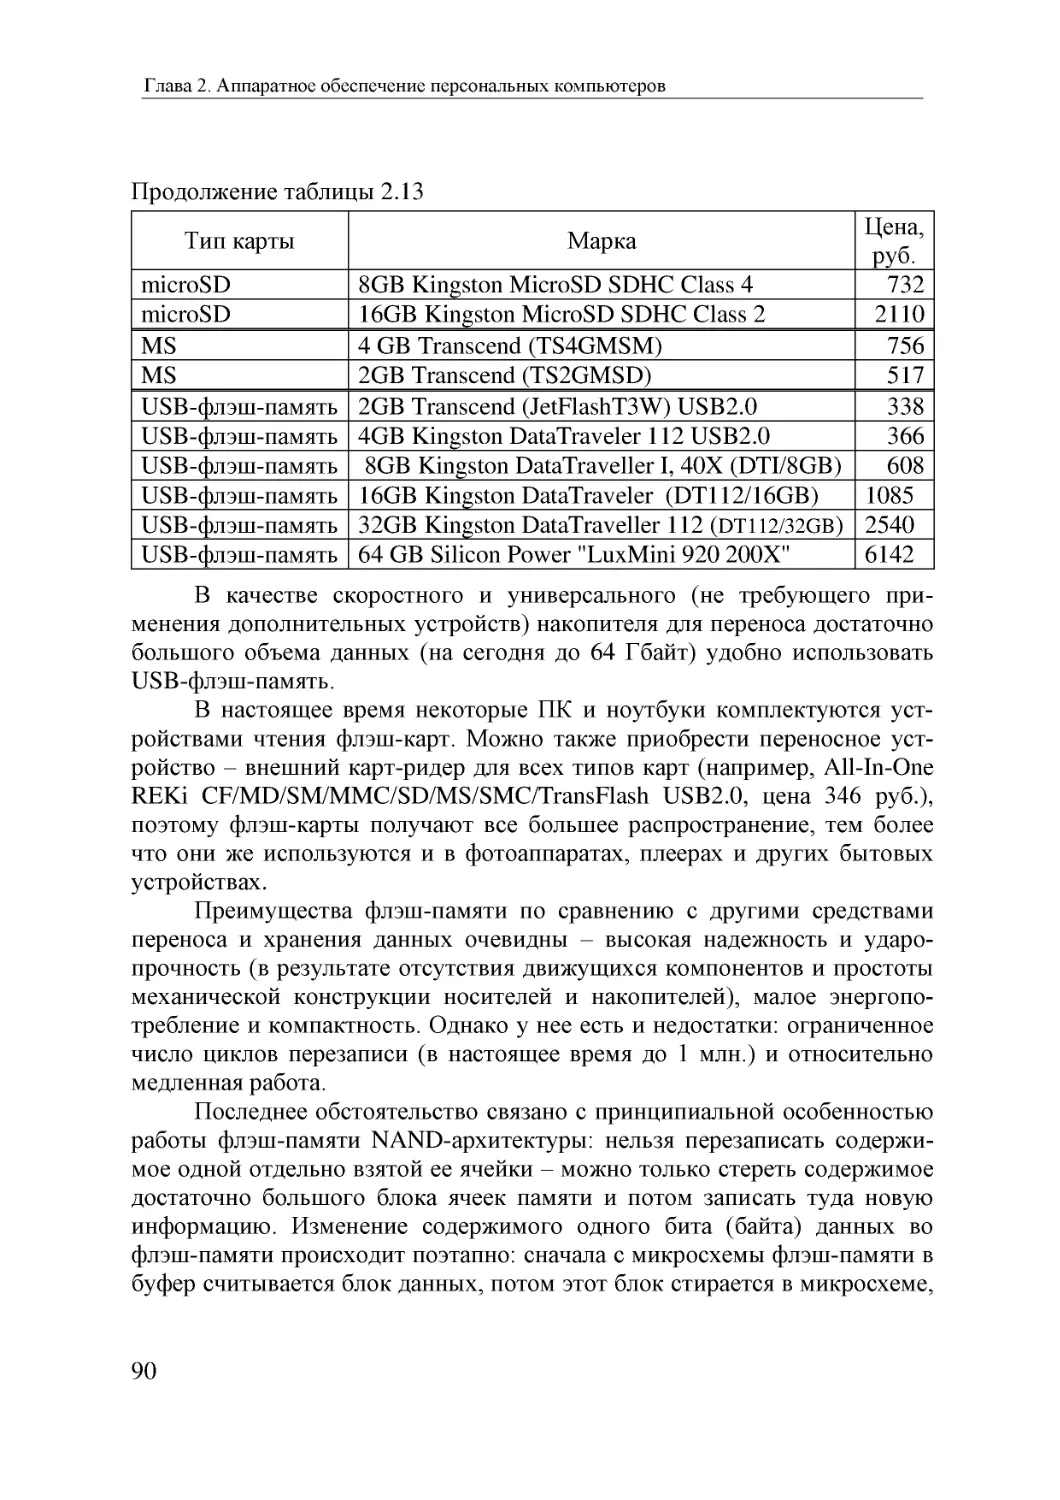 Informatika_Uchebnik_dlya_vuzov_2010 90